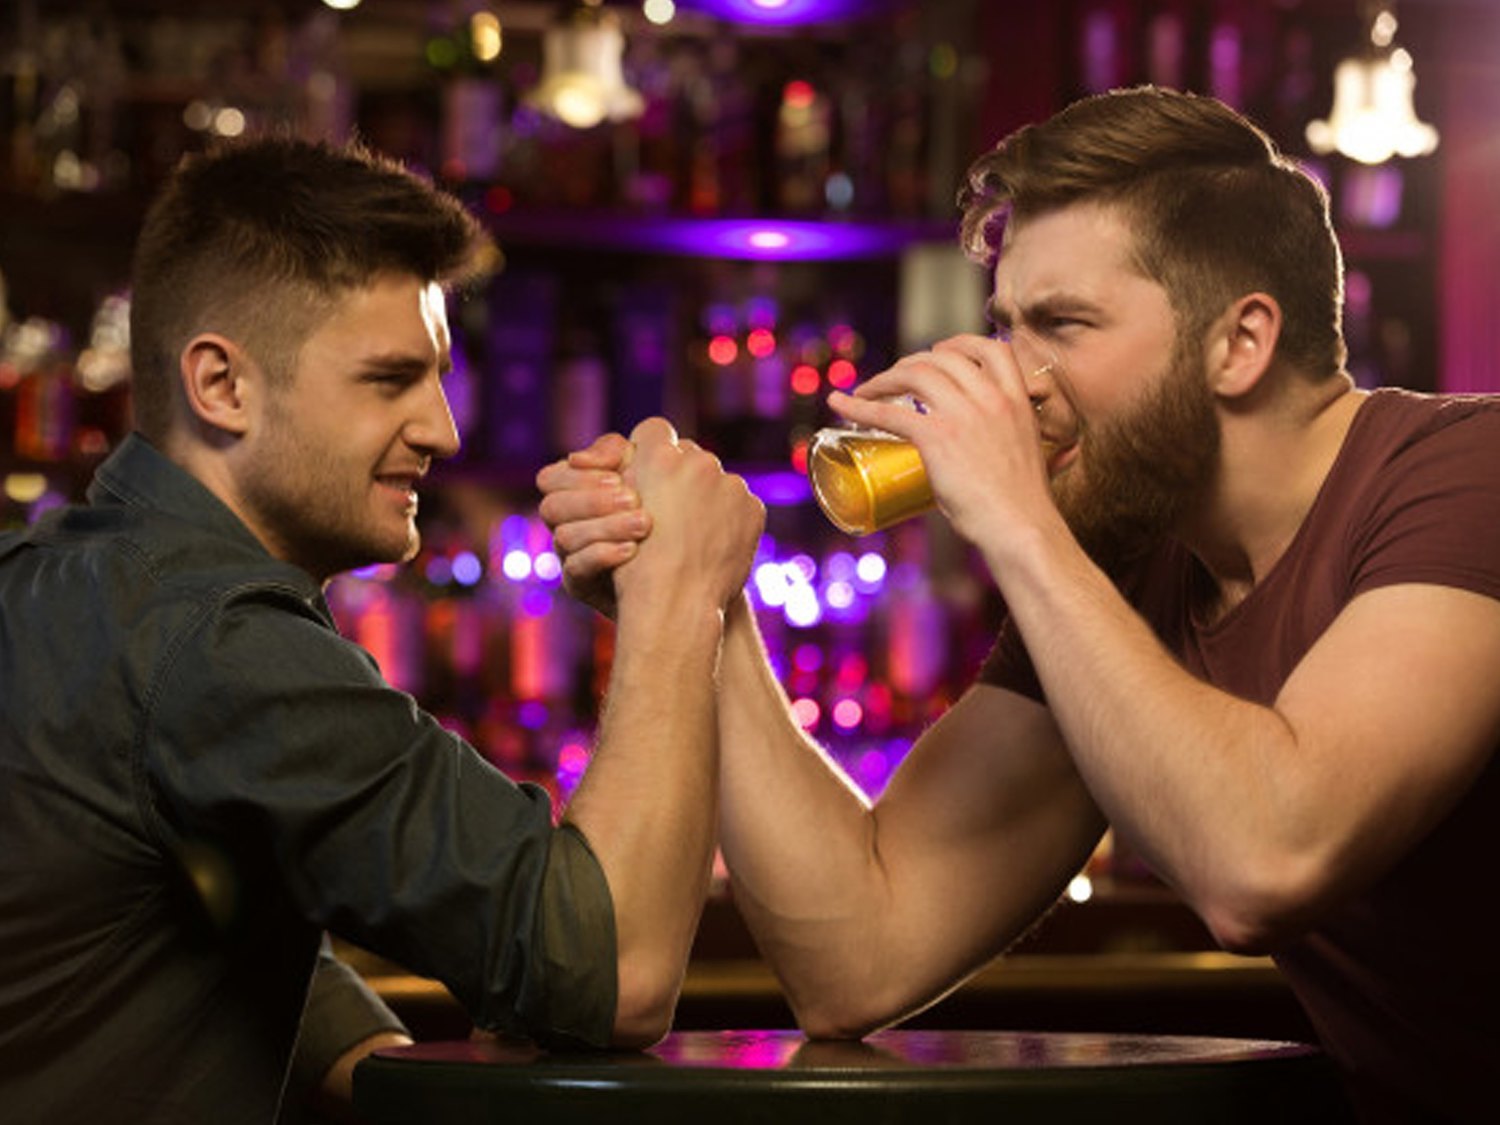 Los 'heteros' se sienten atracción hacia personas del mismo sexo cuando beben, según un estudio